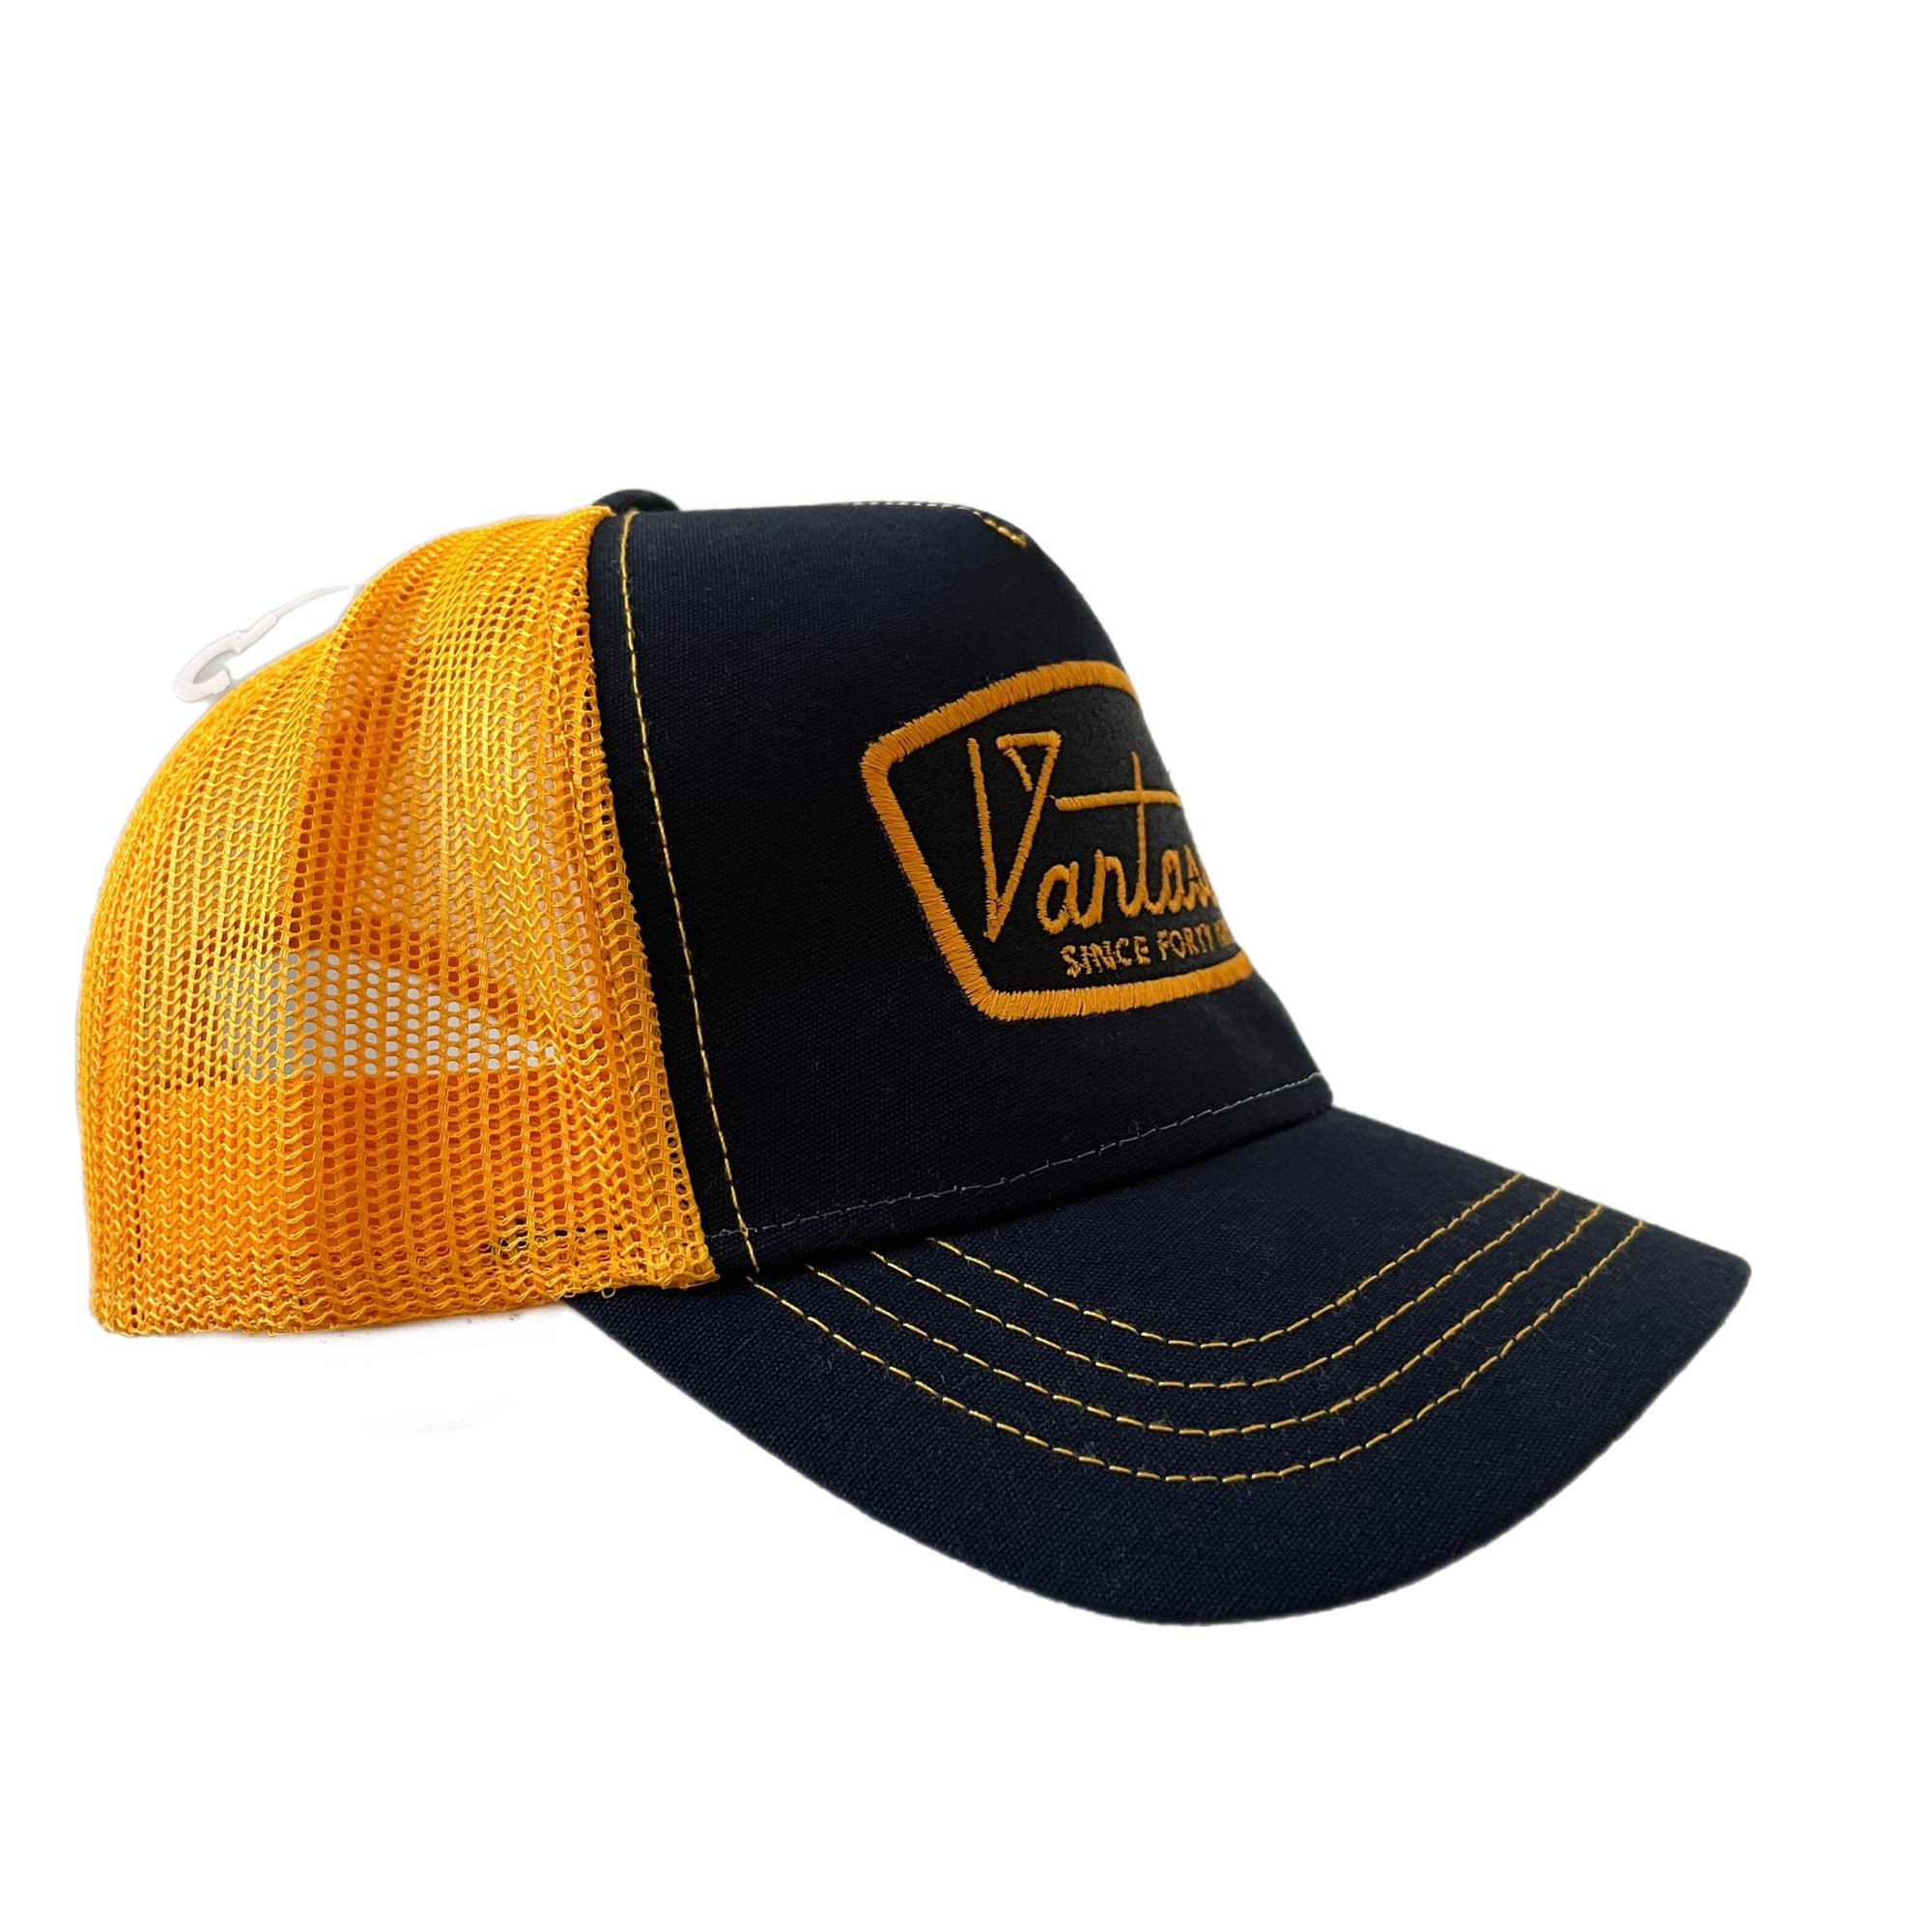 Deluxe trucker cap - navy/yellow